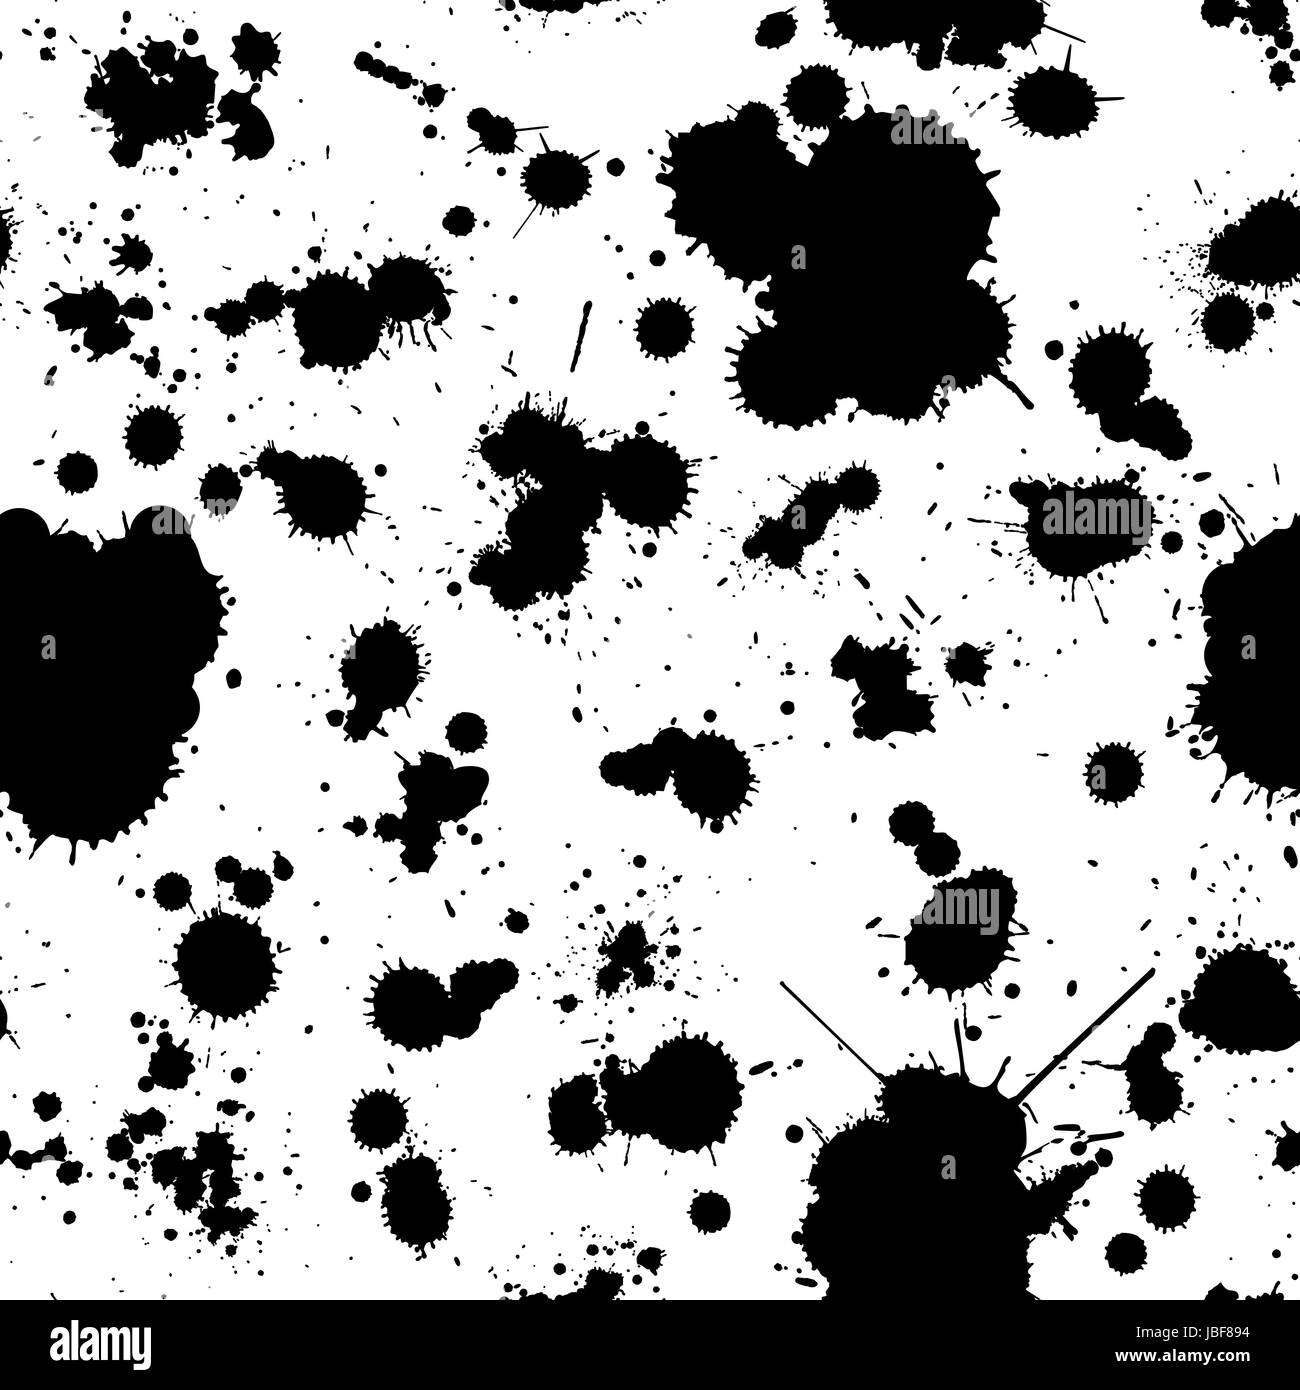 Abstract Grunge Nahtlose Muster In Schwarz Und Weiss Einfach Zu Bearbeiten Hintergrund Fur Ihr Design Stockfotografie Alamy